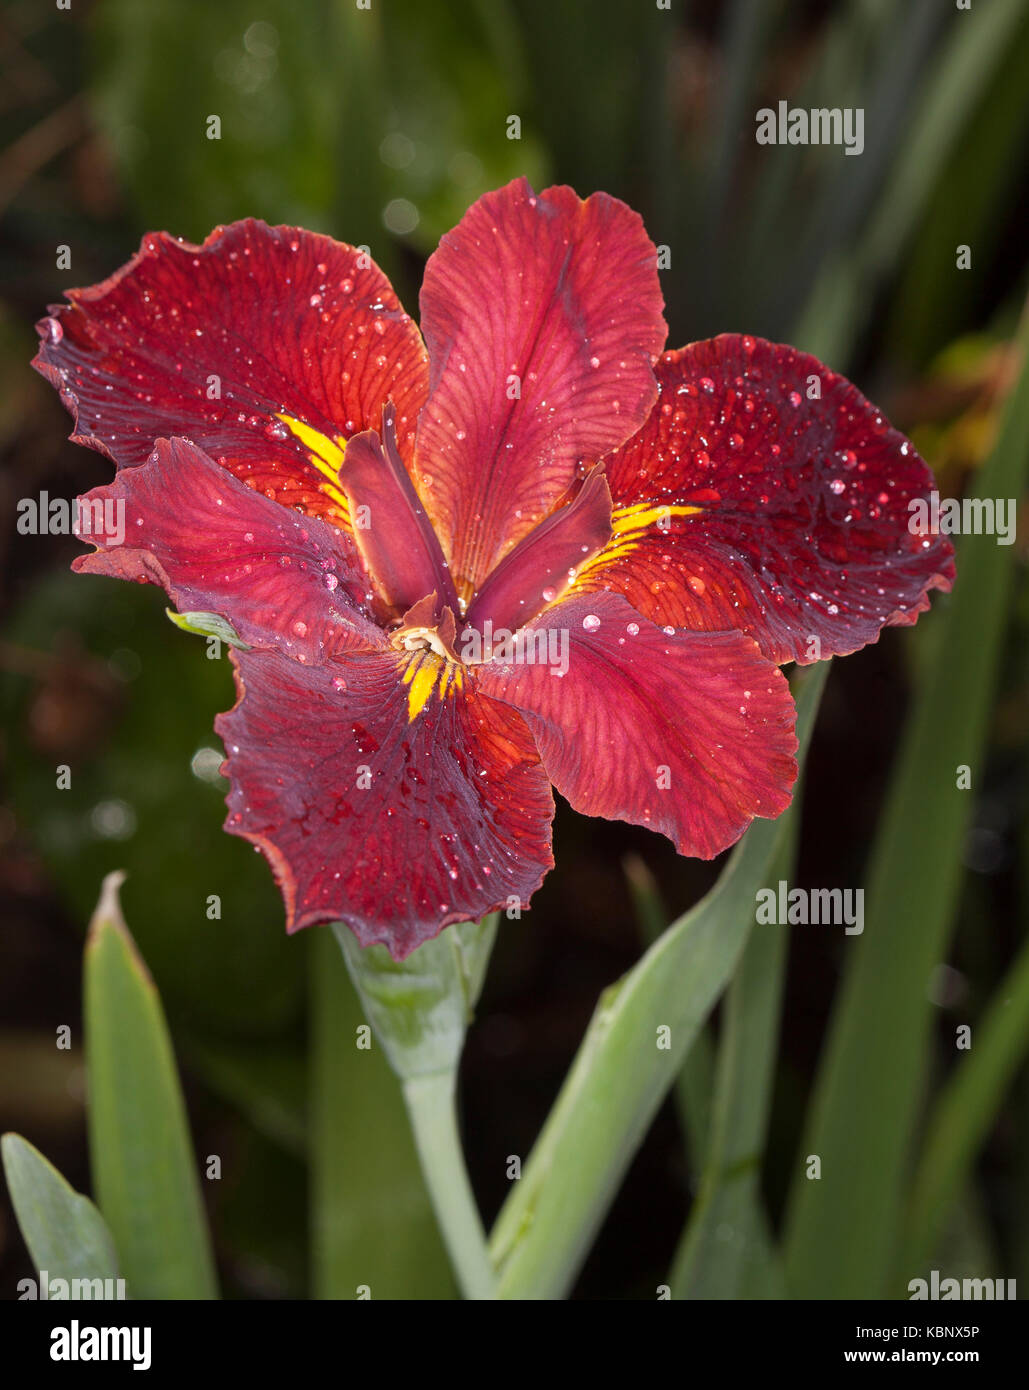 Impresionante e inusual de flores rojo intenso de Louisiana iris con las gotas de lluvia sobre pétalos contra el fondo de hojas verdes Foto de stock